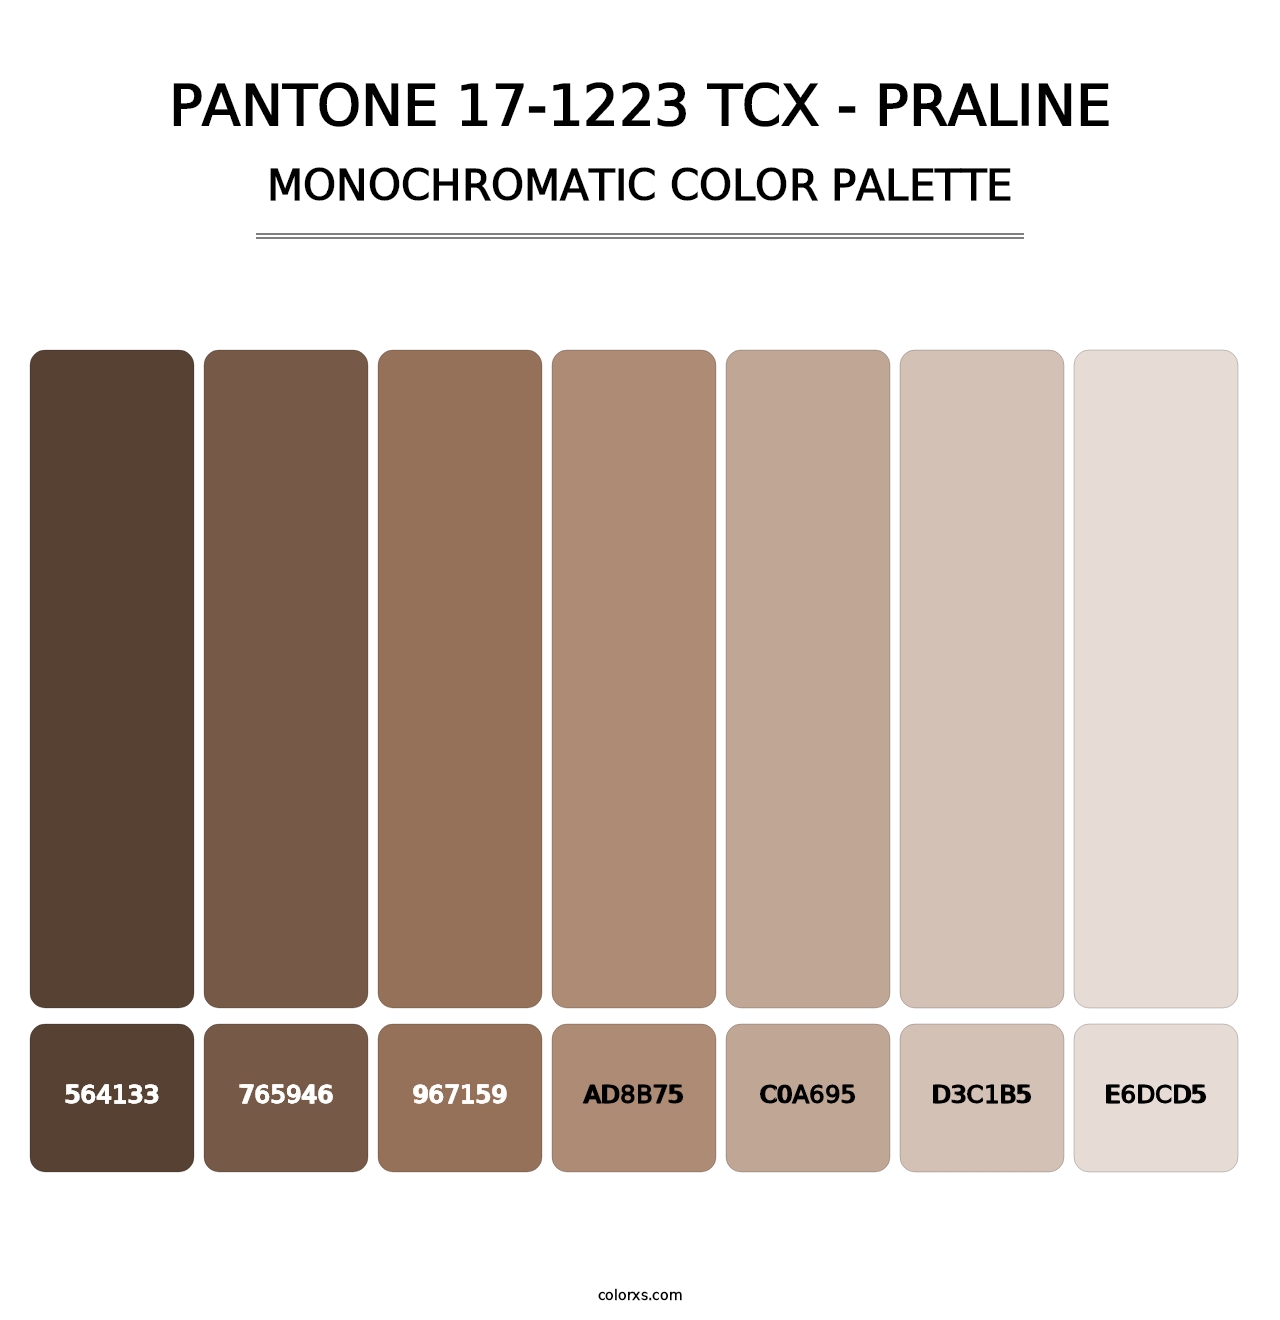 PANTONE 17-1223 TCX - Praline - Monochromatic Color Palette